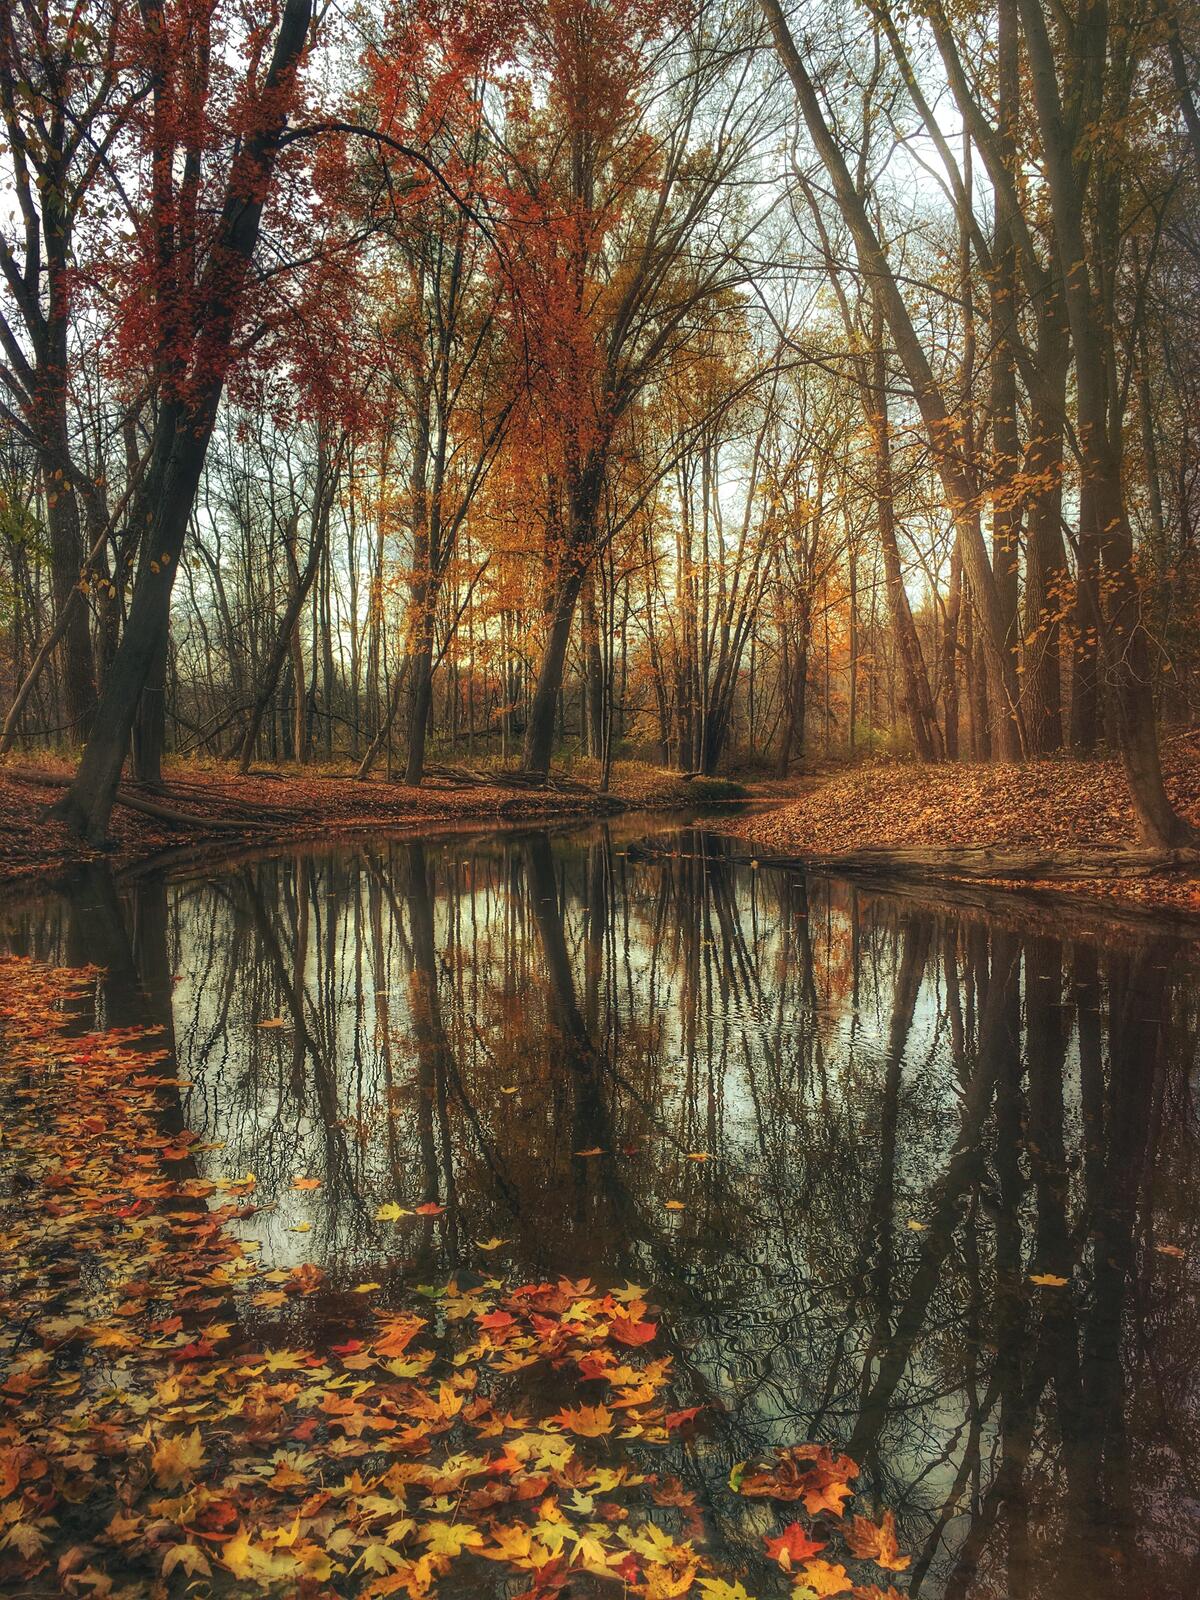 Берега реки усыпанные опавшими листьями желтого цвета